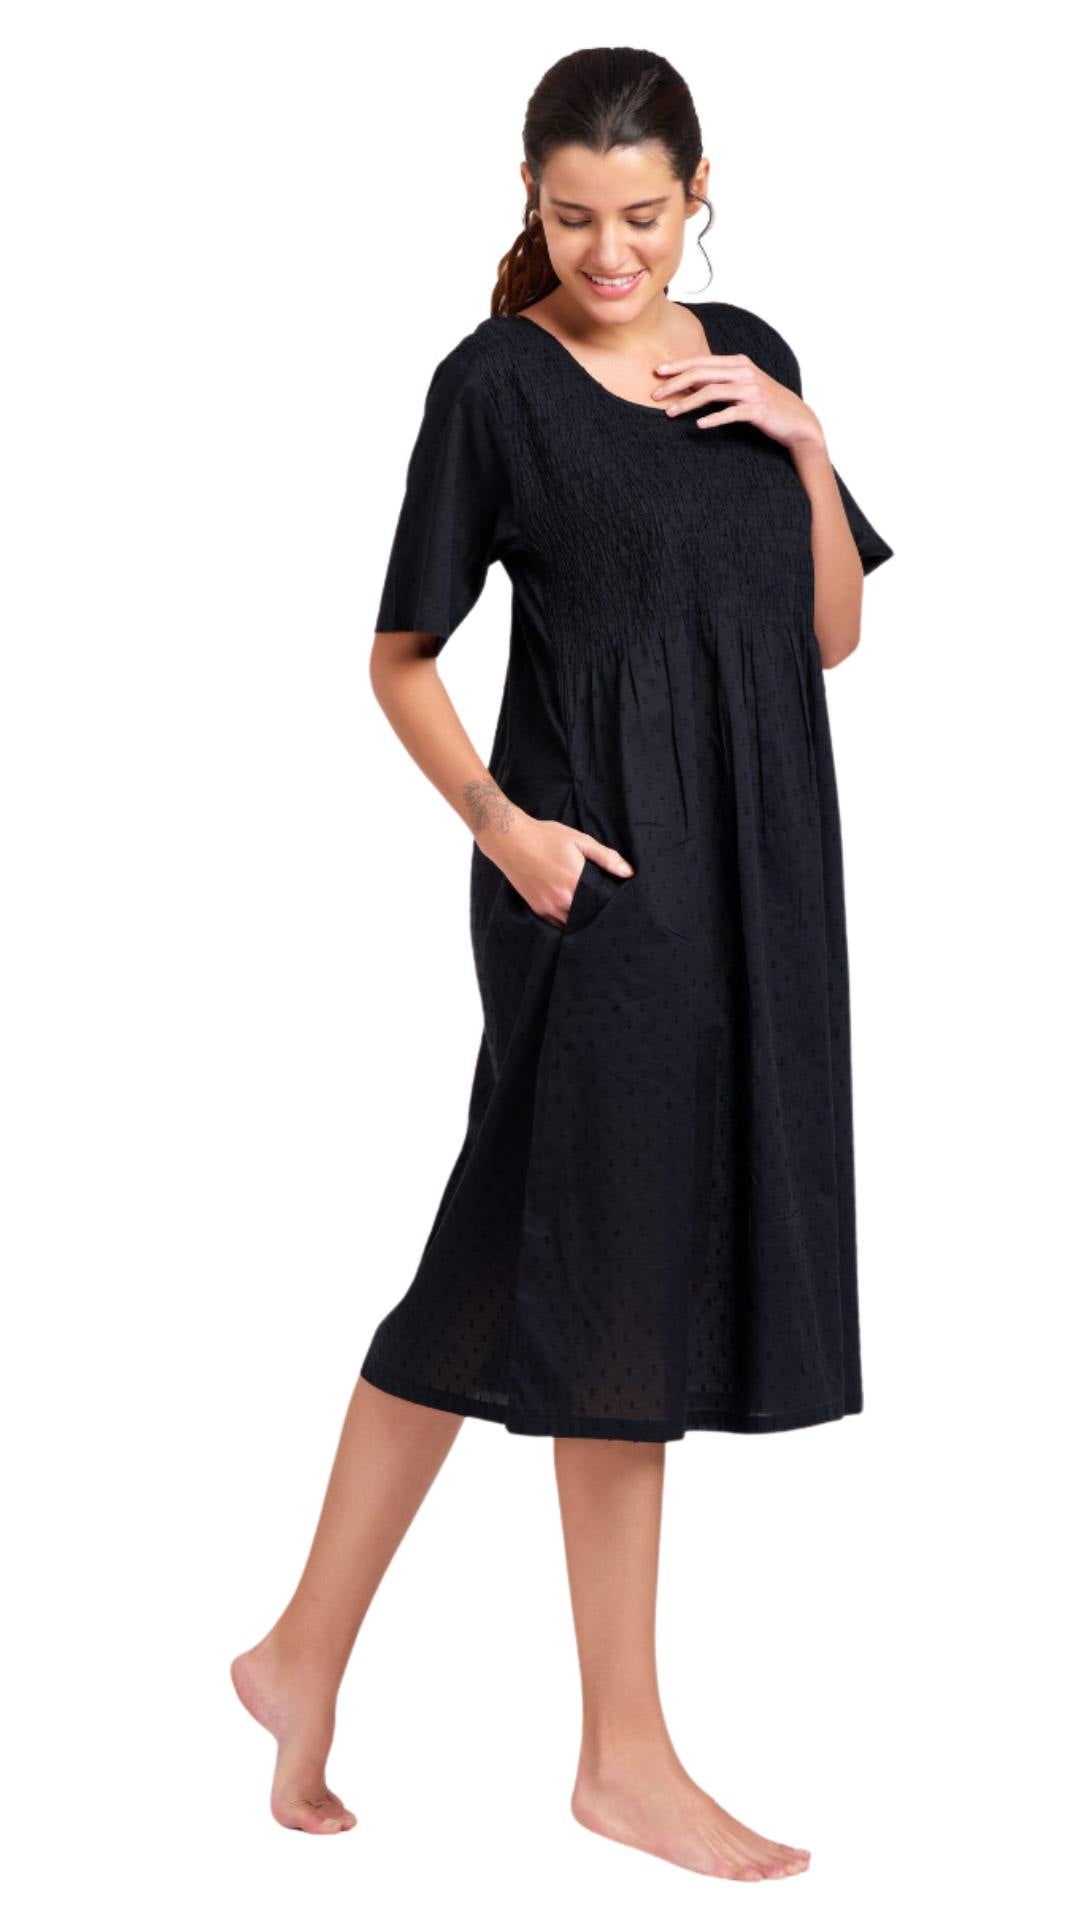 Margot Short Sleeve Black Cotton Nightie